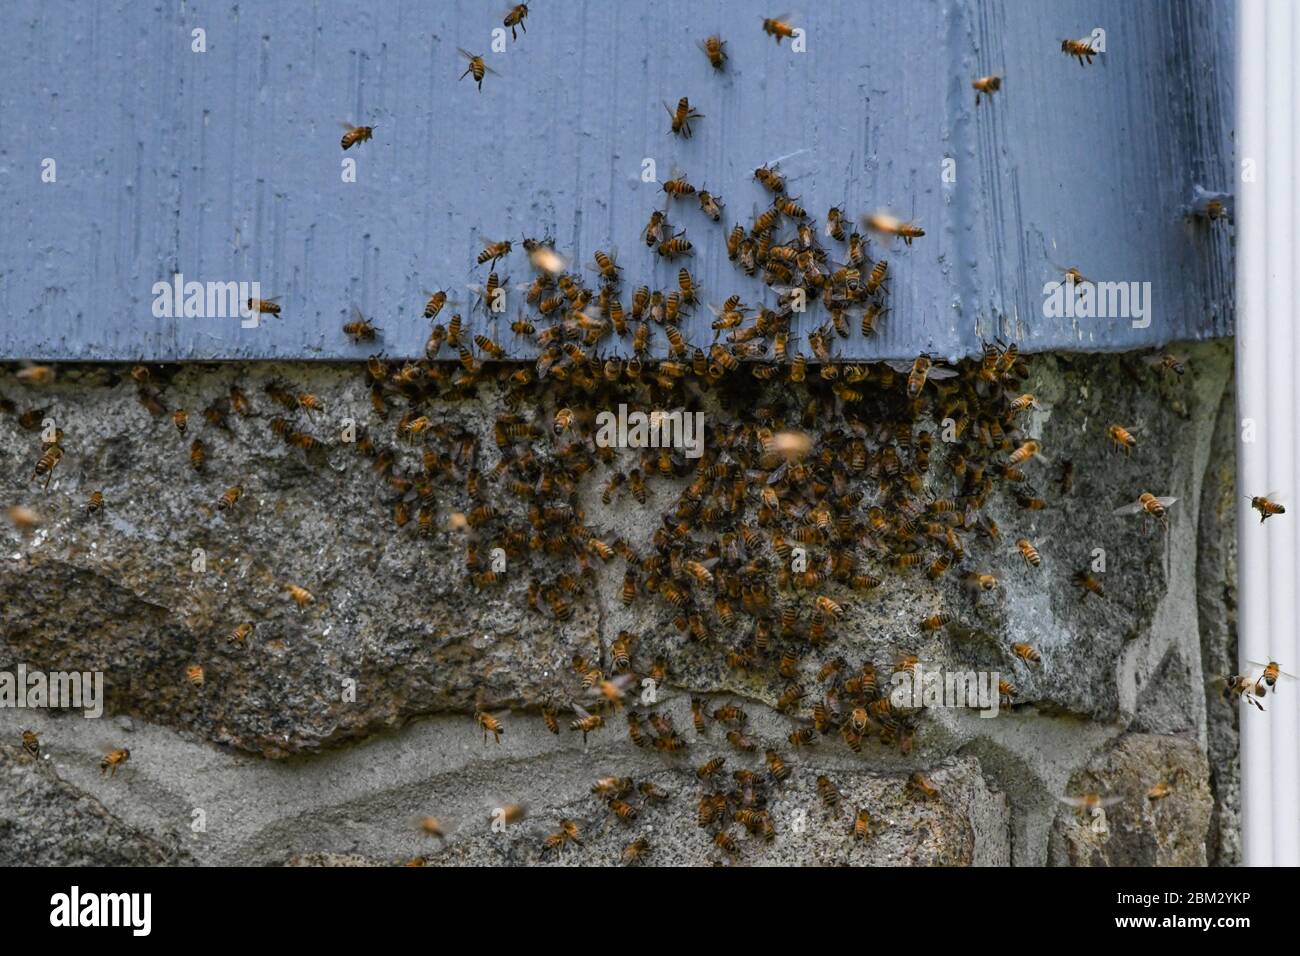 Un essaim d'abeilles - APIs mellifera - sur une maison et fait une nouvelle maison sous les bardeaux / voie d'évitement - des milliers d'abeilles de miel qui balanlent le vol dans l'air Banque D'Images